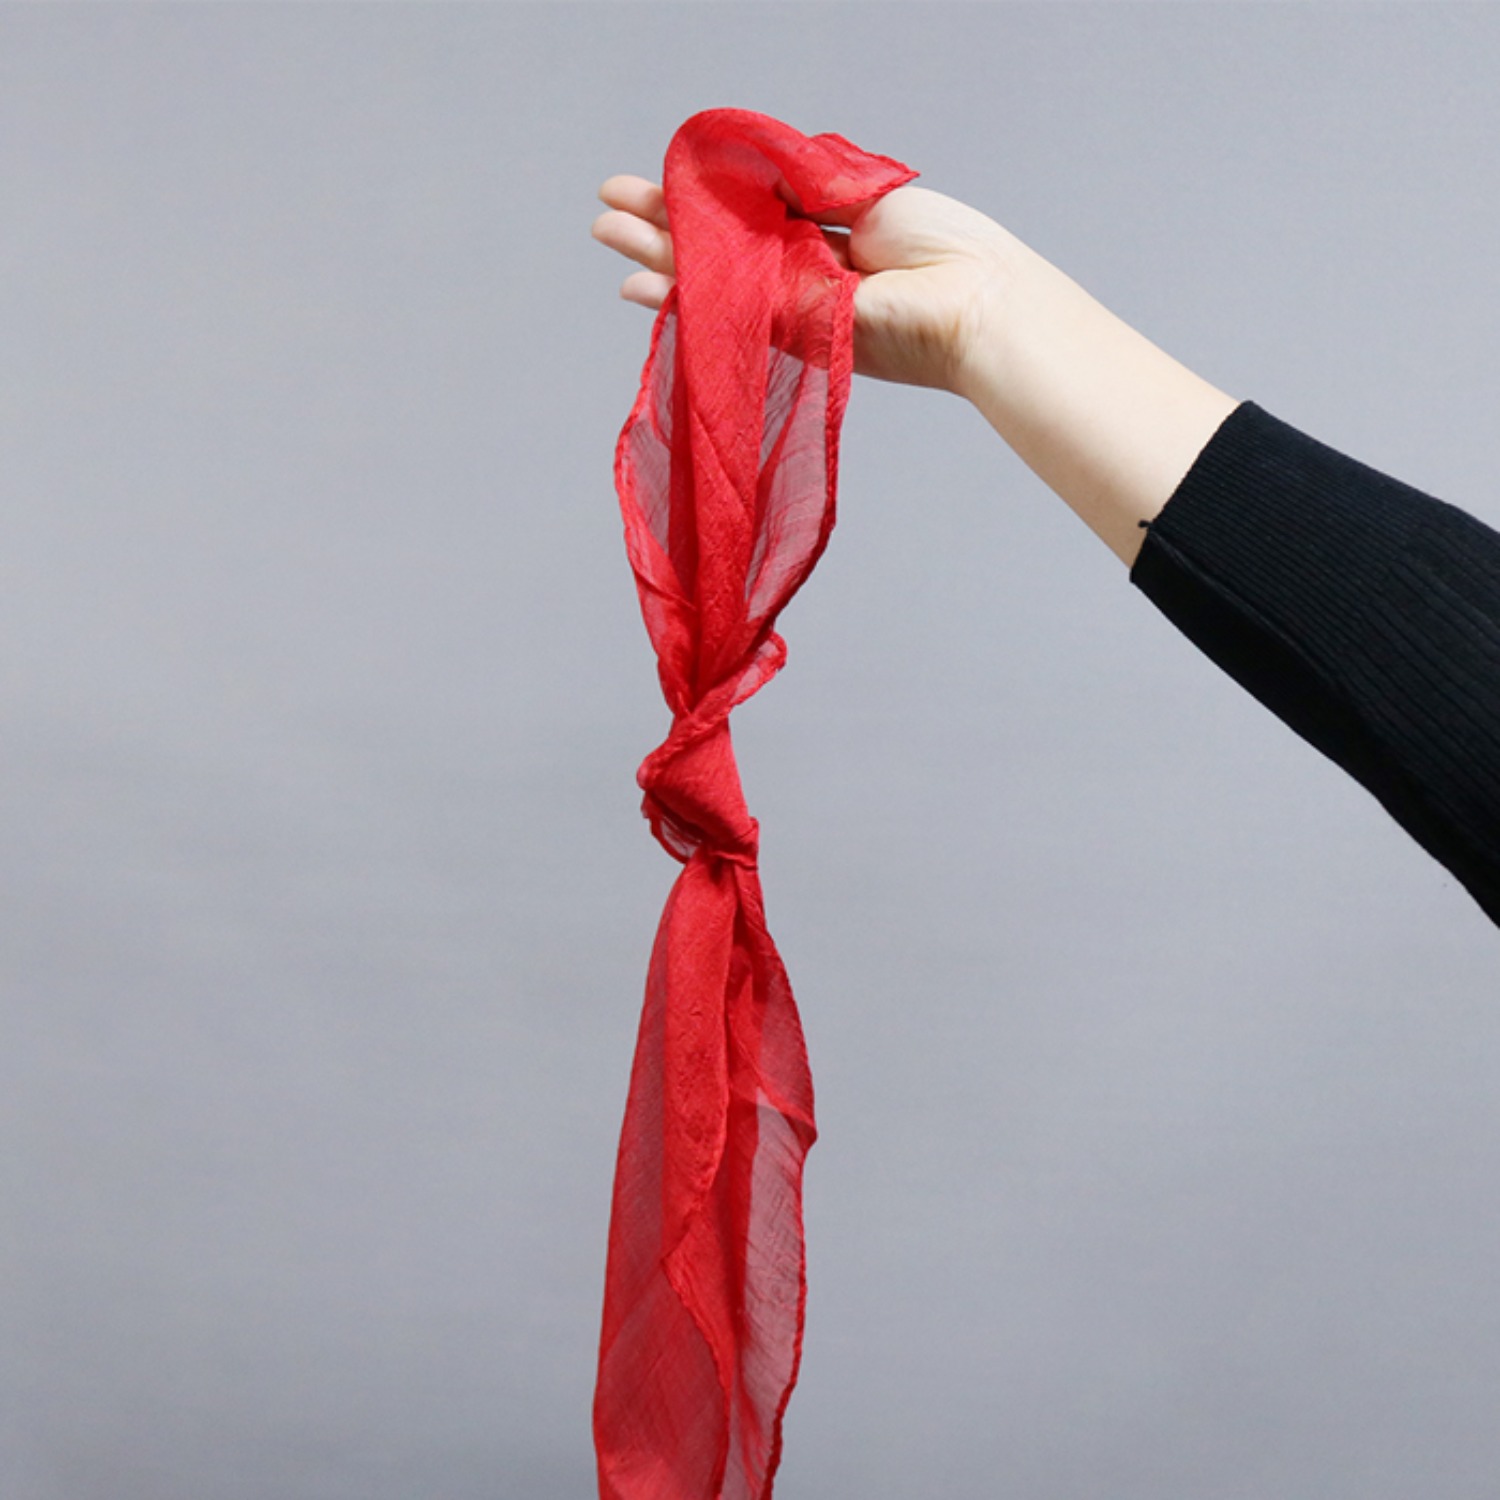 [낫오프실크 / Knots Off Silk] 실크를 묶어 만든 매듭을 떼어내는 마술을 연출하실 수 있습니다.